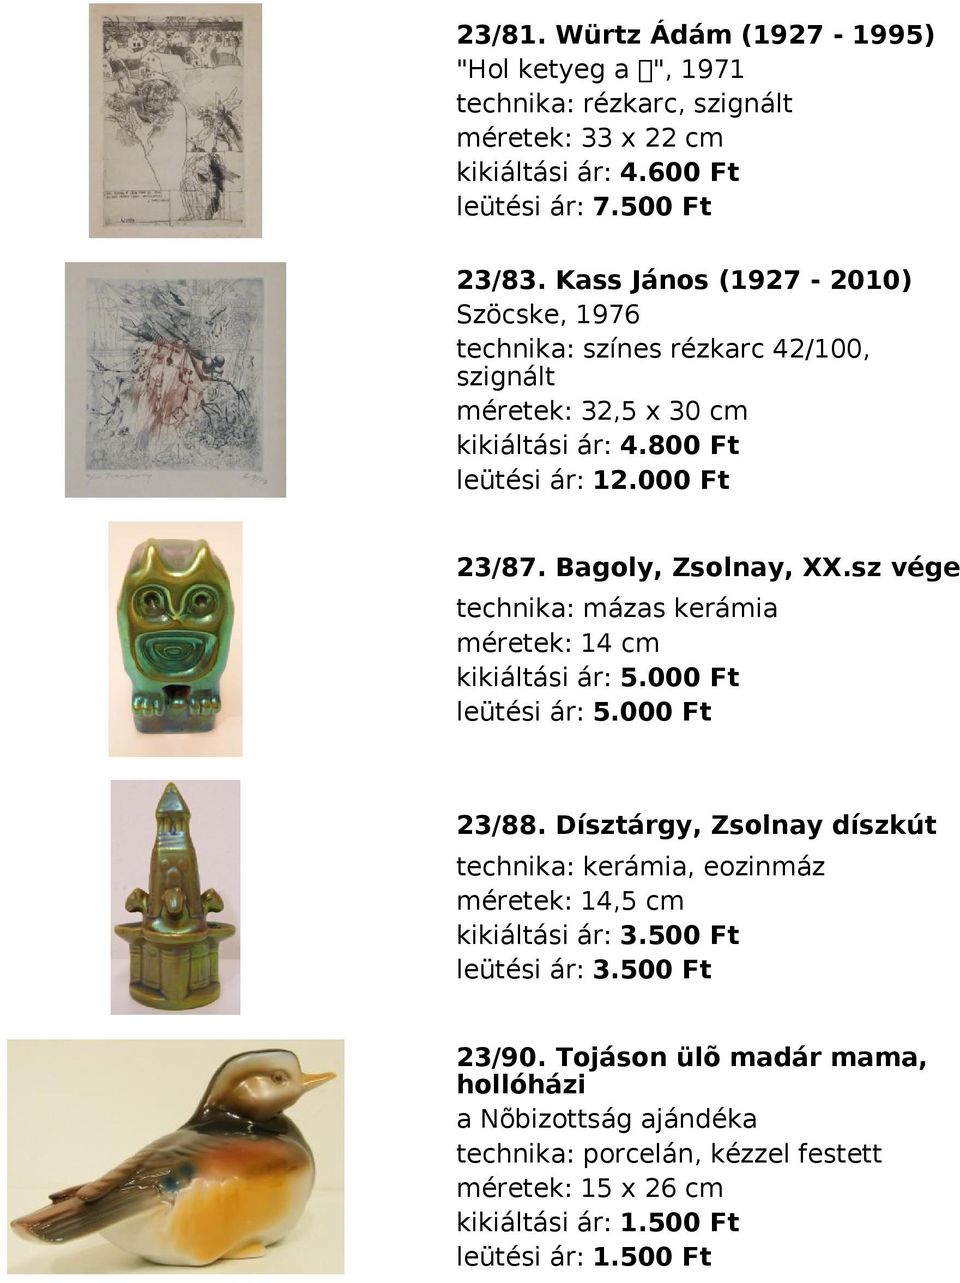 Bagoly, Zsolnay, XX.sz vége technika: mázas kerámia méretek: 14 cm kikiáltási ár: 5.000 Ft leütési ár: 5.000 Ft 23/88.